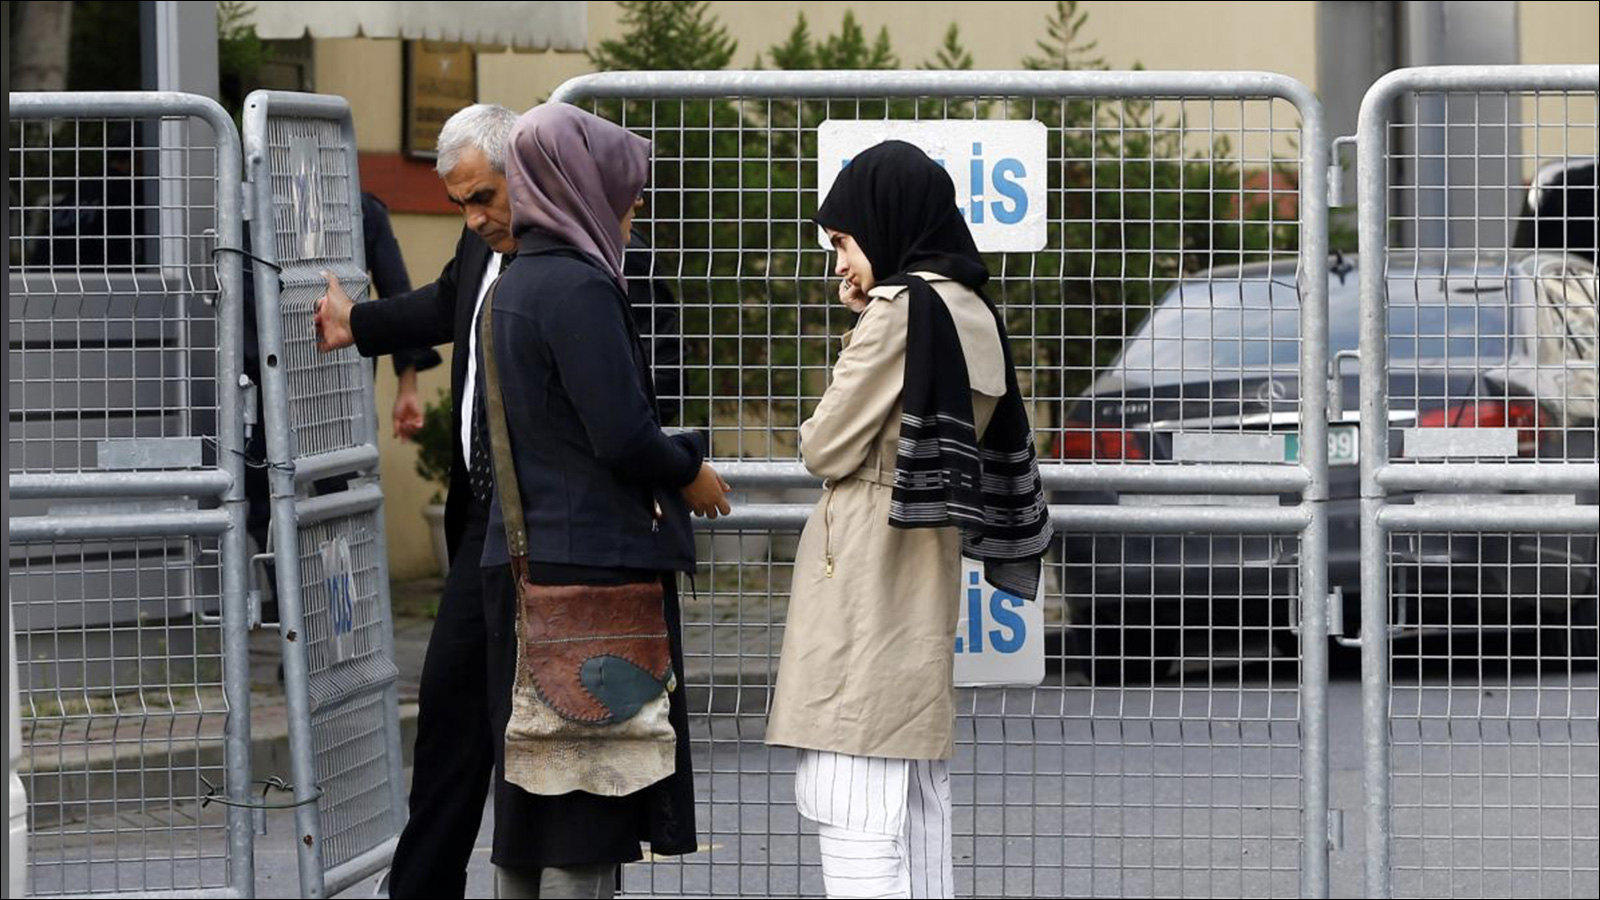 خطيبة خاشقجي  اتهمتها بعض الصحف السعودية بالتواطؤ في قضية اختفاء خاشقجي(رويترز)